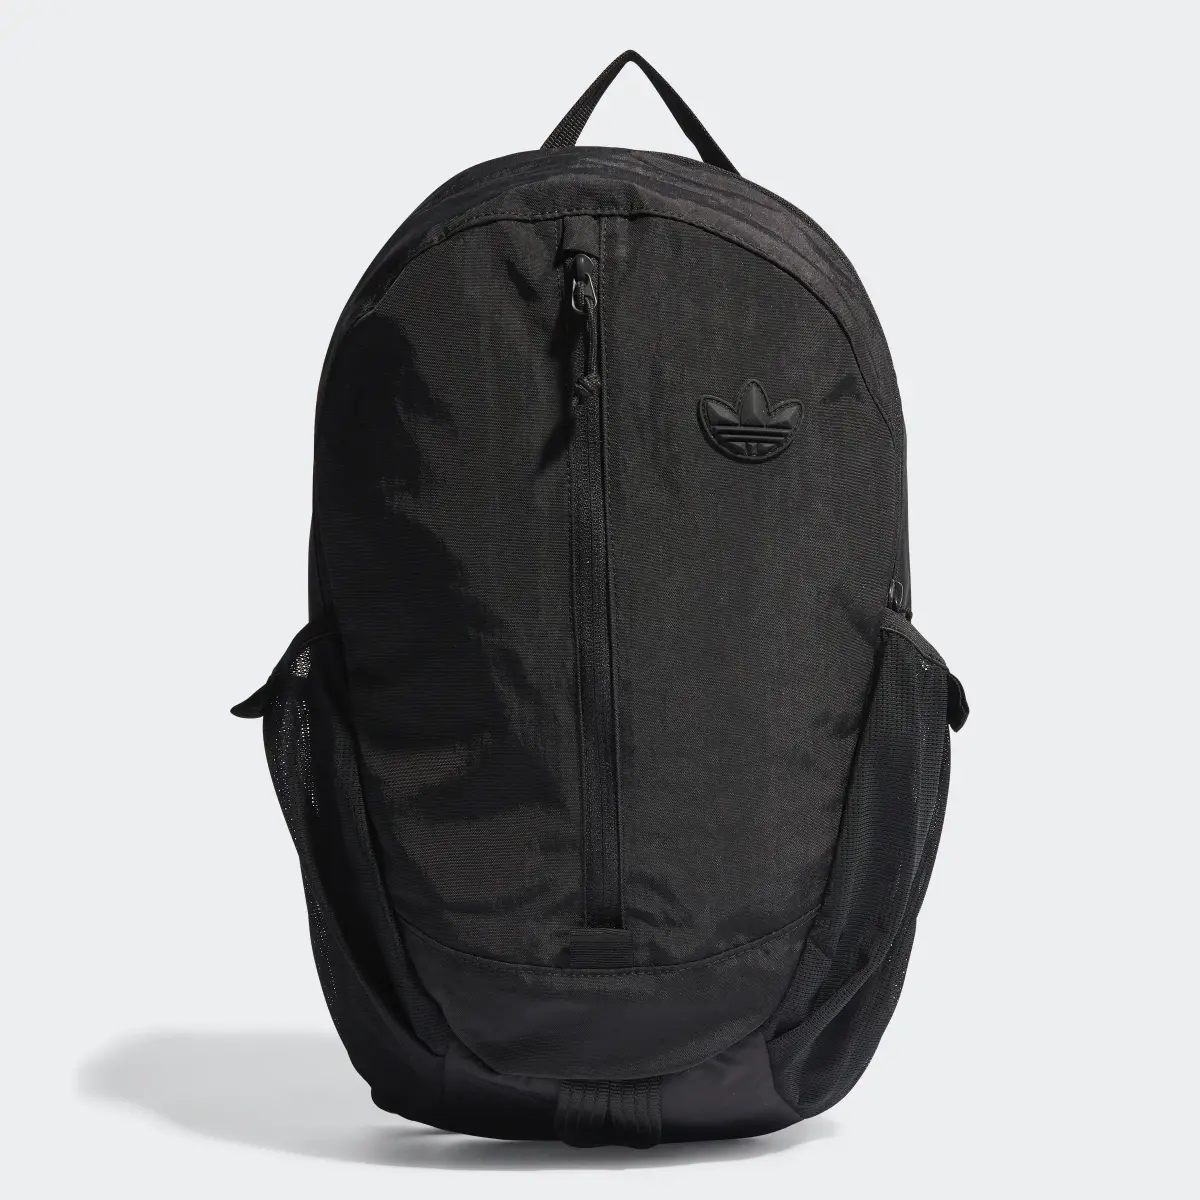 Adidas Adventure Backpack. 1